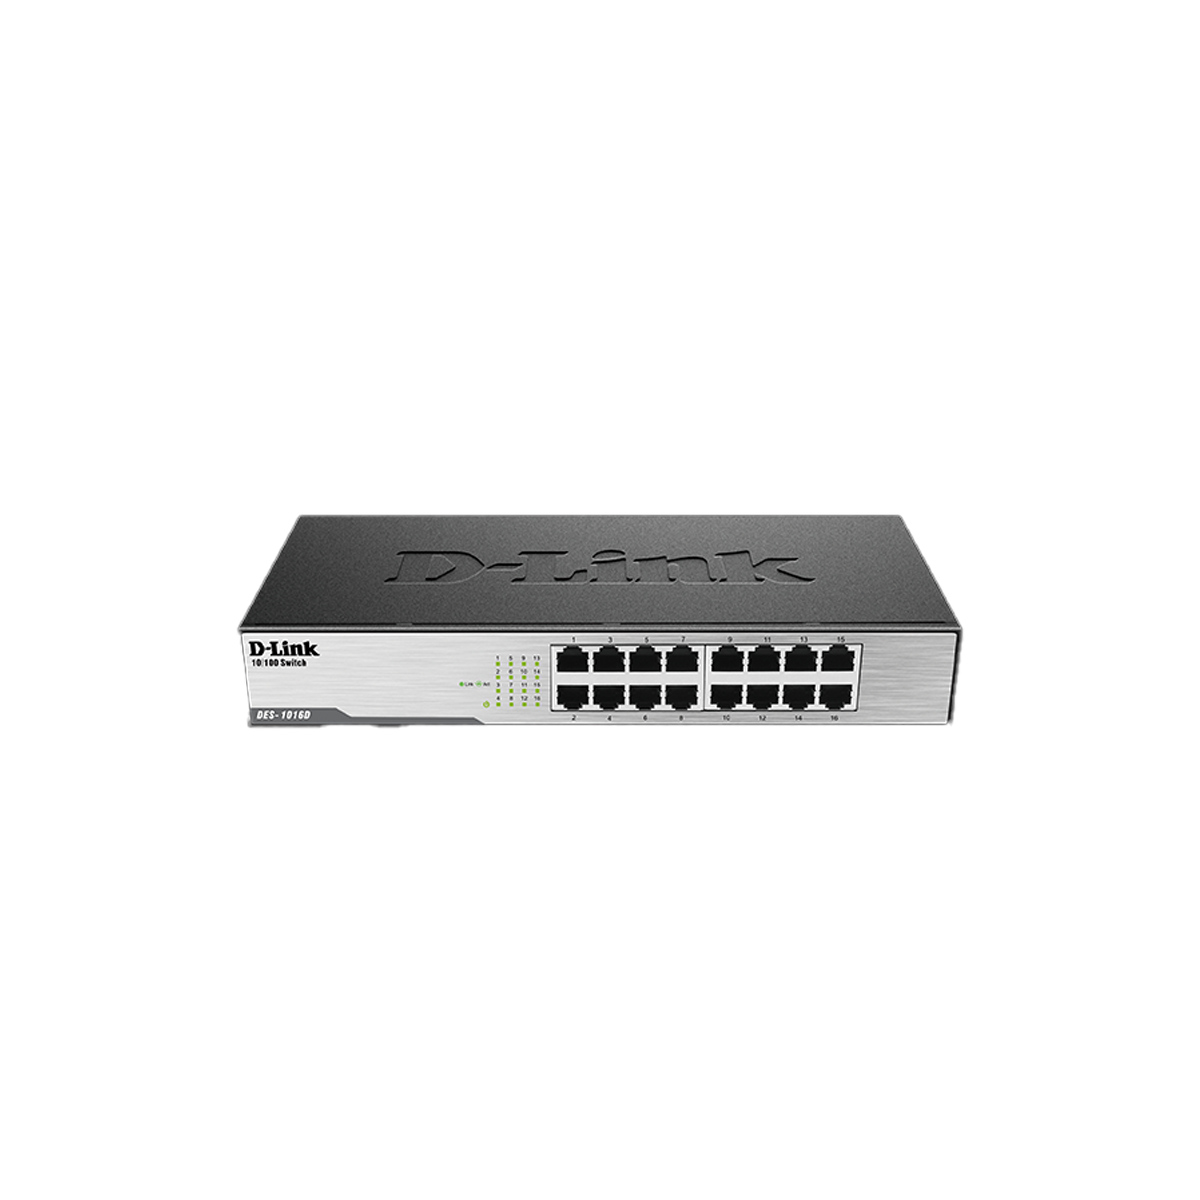 16-Port Fast Ethernet Unmanaged Desktop Switch (DES-1016D)